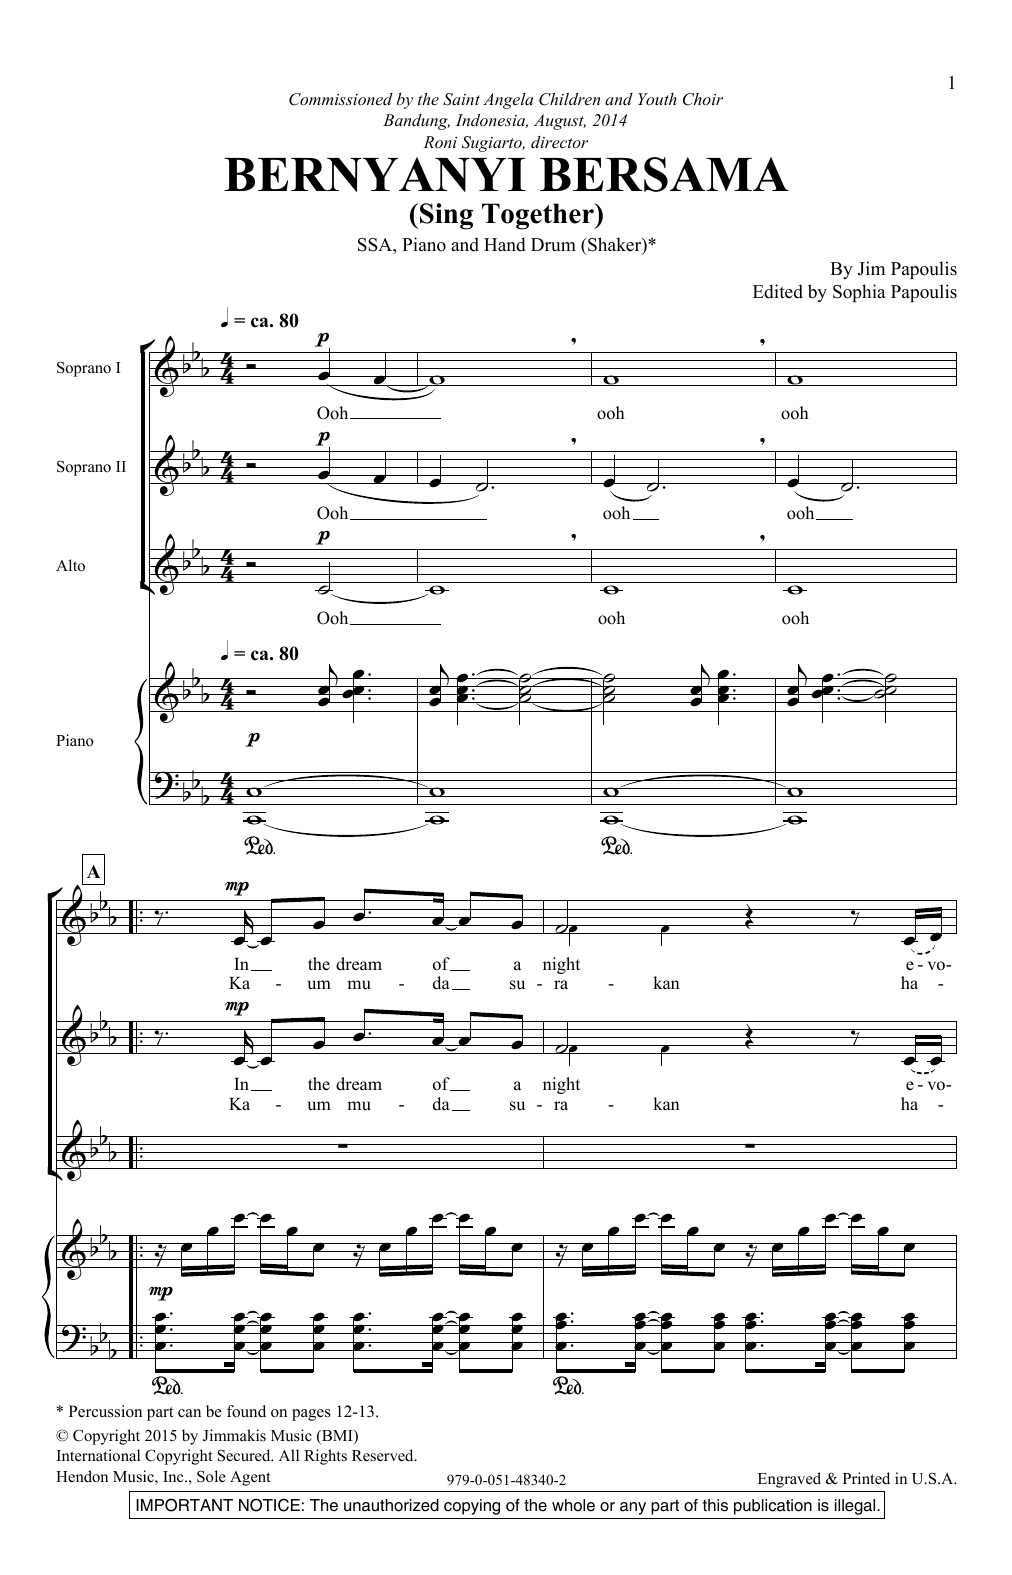 Jim Papoulis Bernyanyi Bersama Sheet Music Notes & Chords for SSA - Download or Print PDF